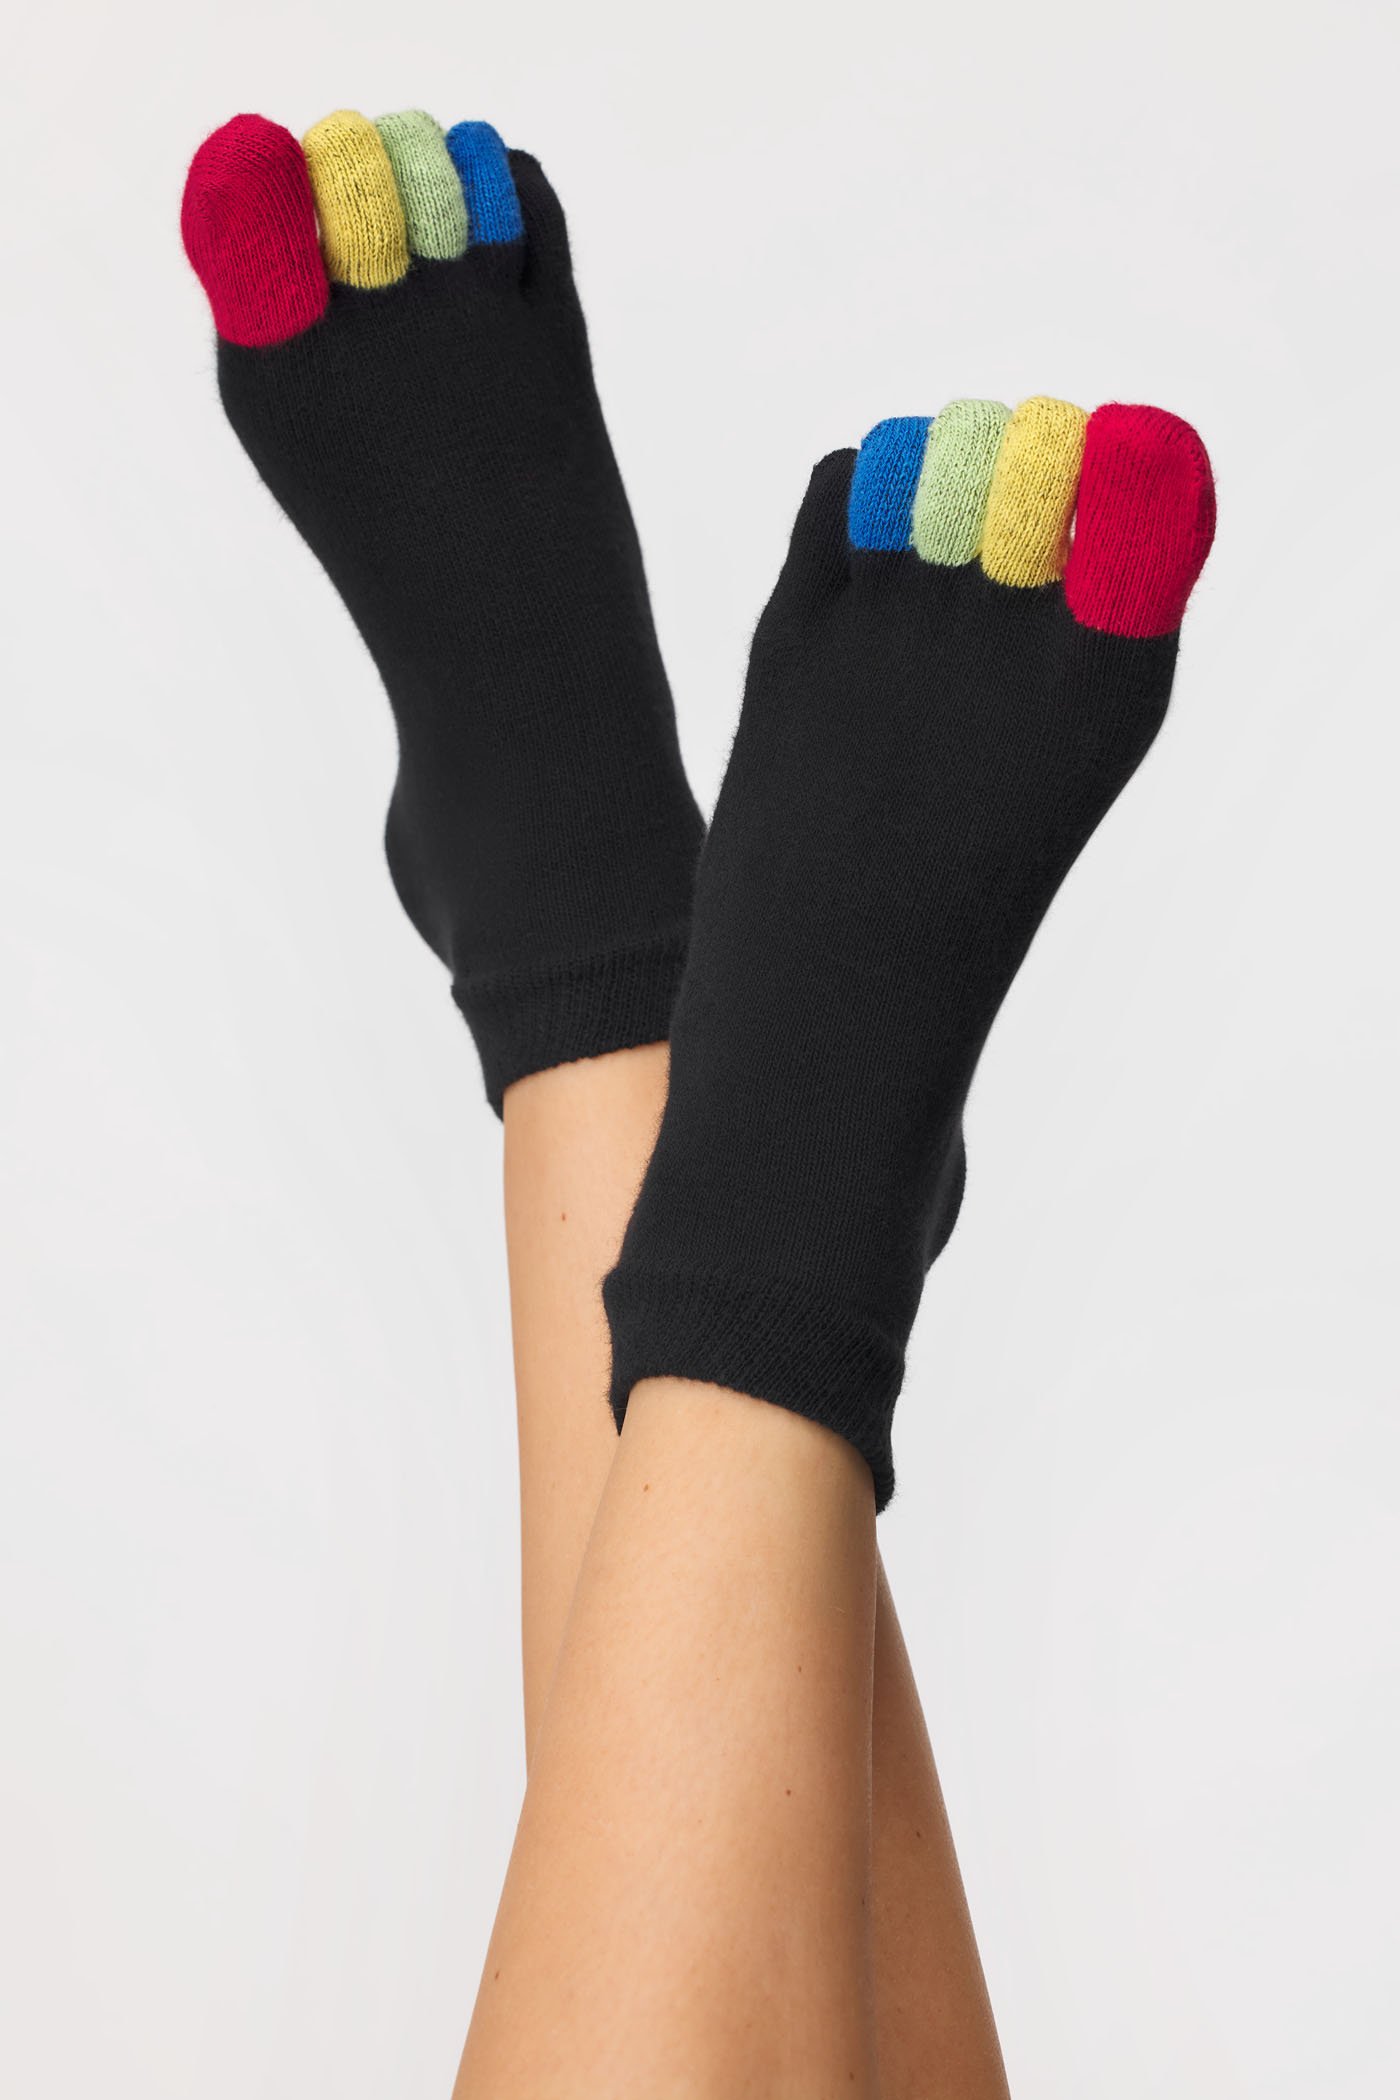 Дамски чорапи с пръсти Fruity | Astratex.bg